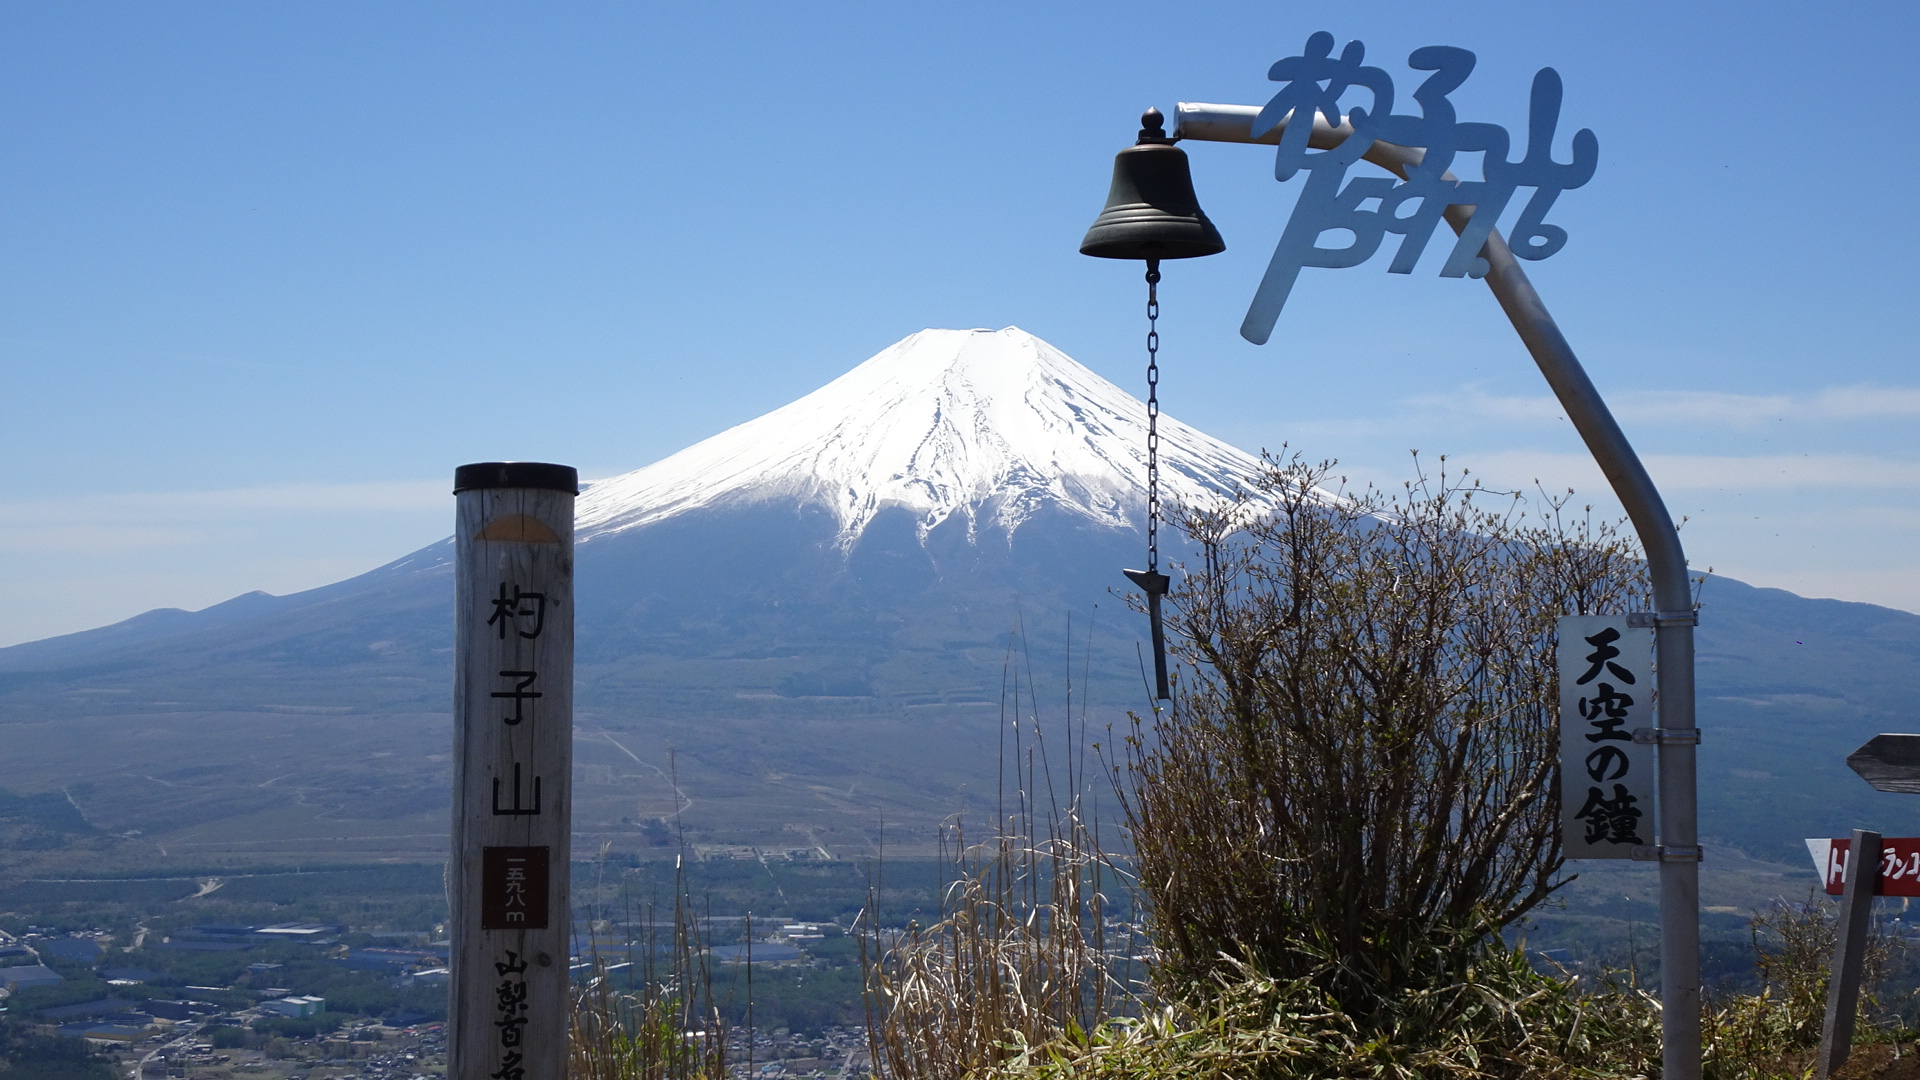 絶景富士山を眺めるおすすめの山 レンタル登山道具で登る杓子山 そらのしたスタイル